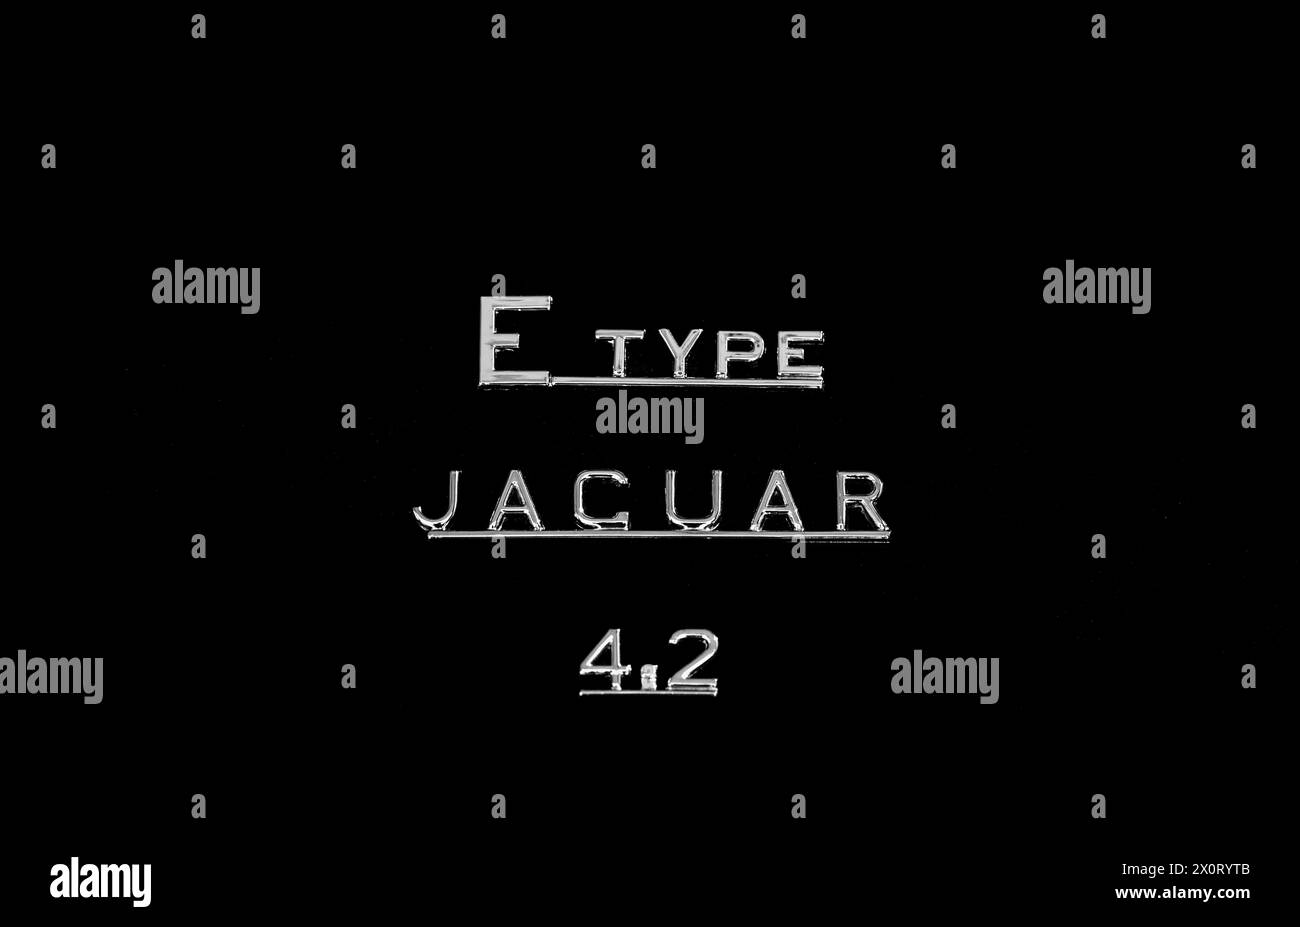 Detaillierte Abbildung des Namens auf dem Lkw eines alten jaguar Sportwagens vom Typ E, 4,2 Stockfoto